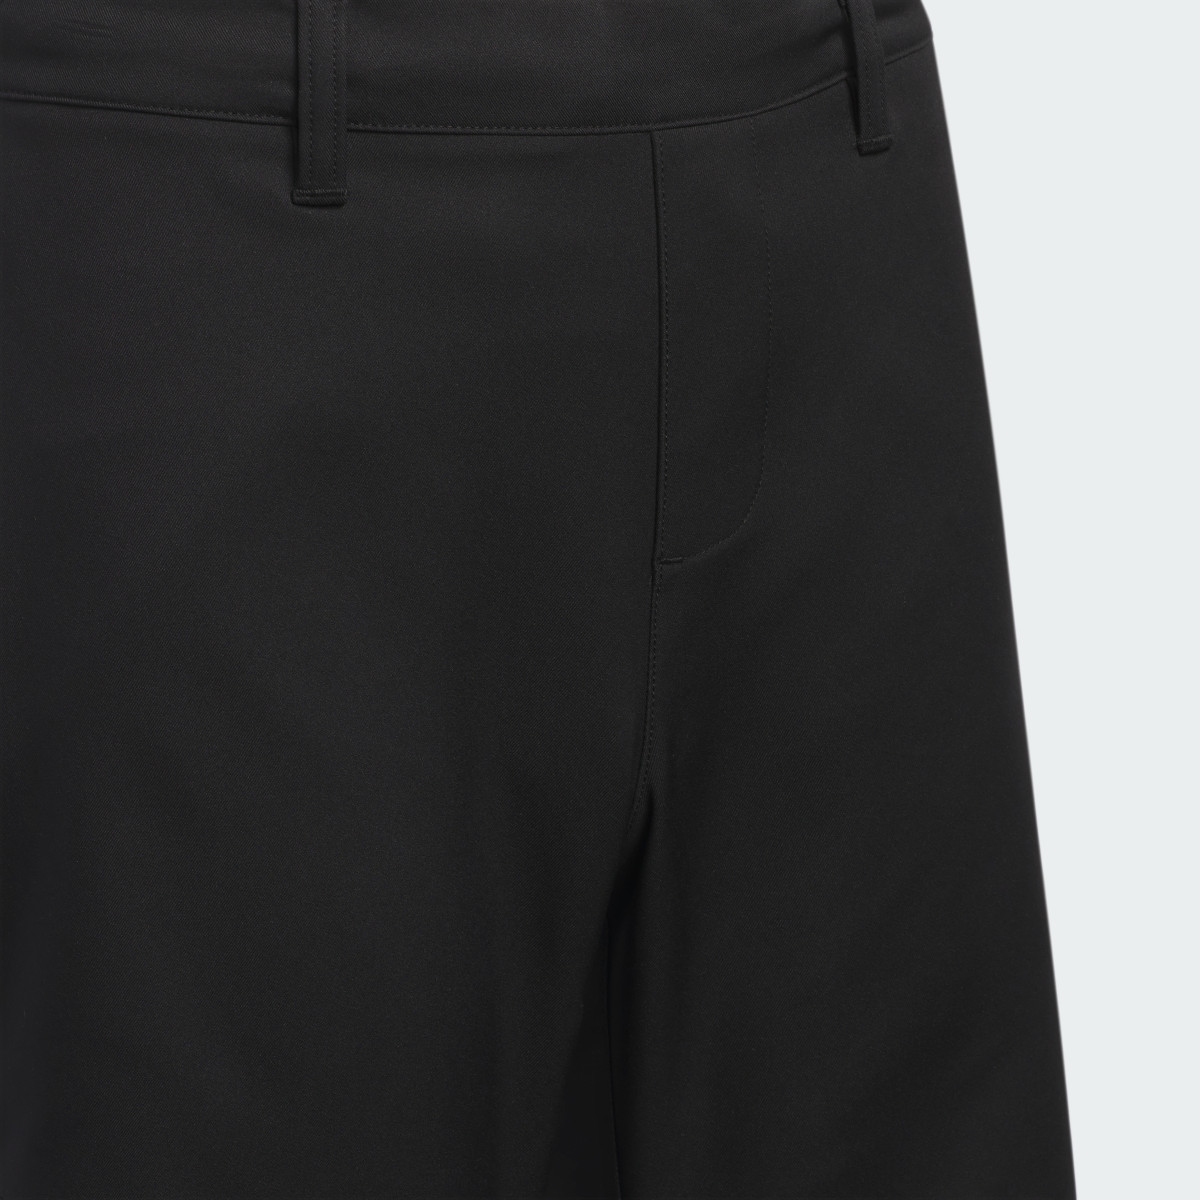 Adidas Pantalón corto Ultimate365 Adjustable (Adolescentes). 4